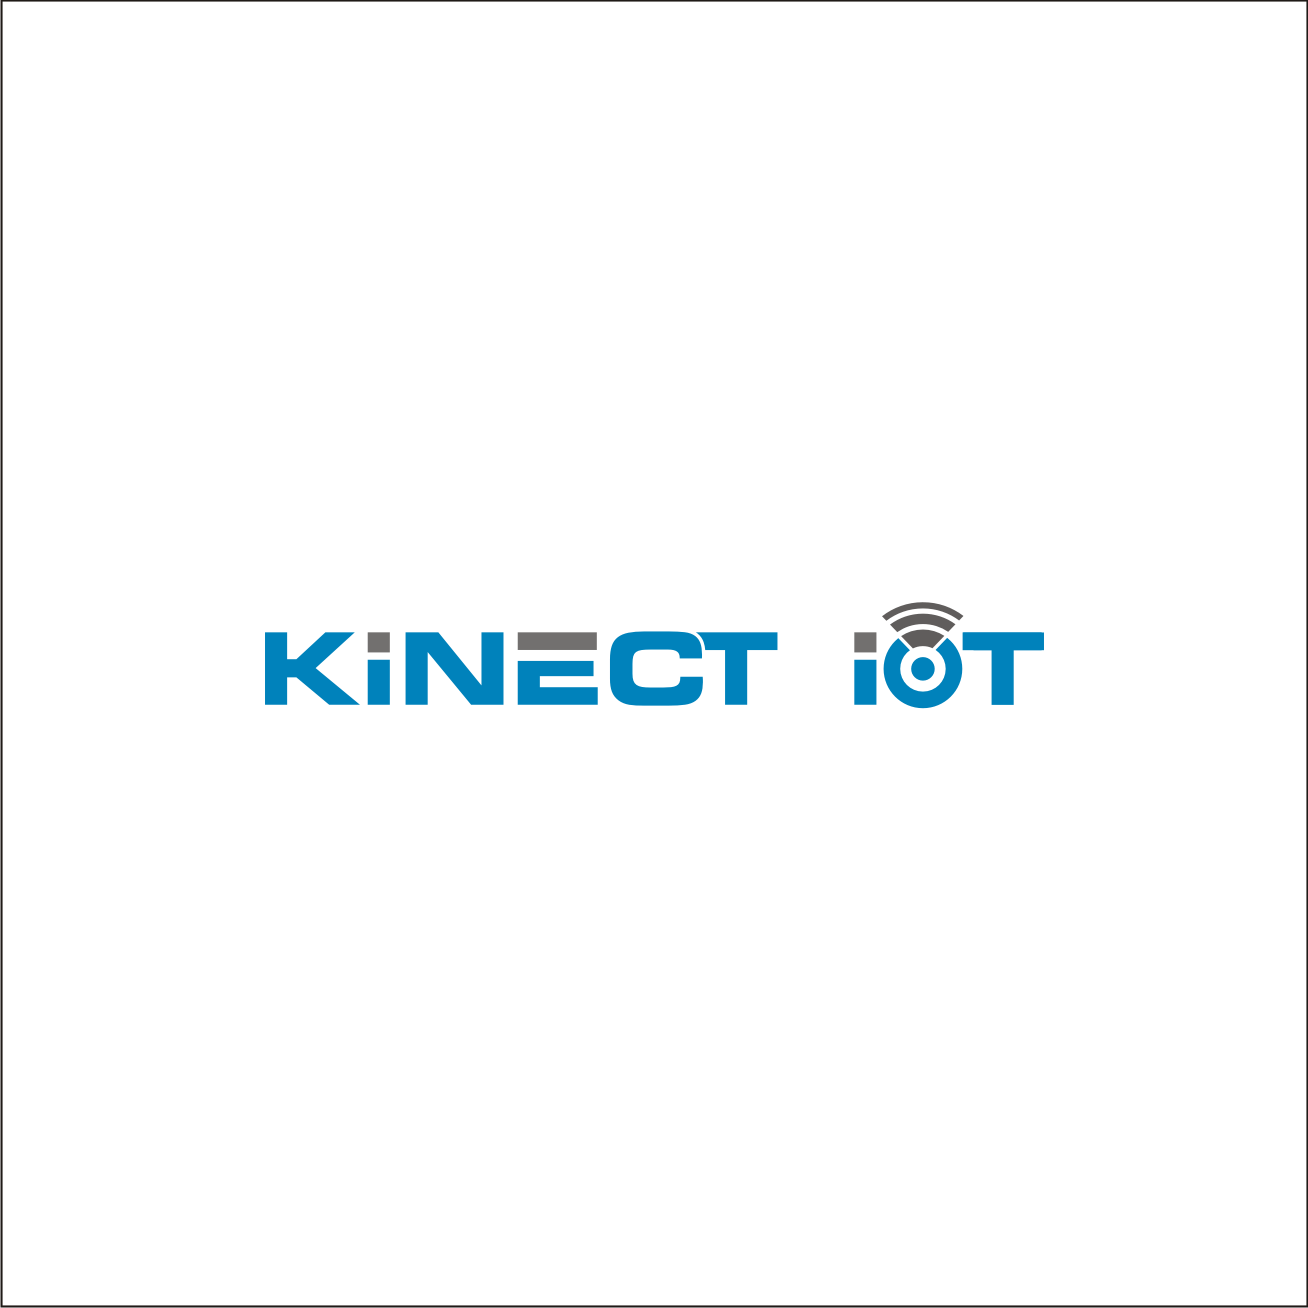 Kinect Logo - Elegant, Playful Logo Design for kinect IOT or kinect internet